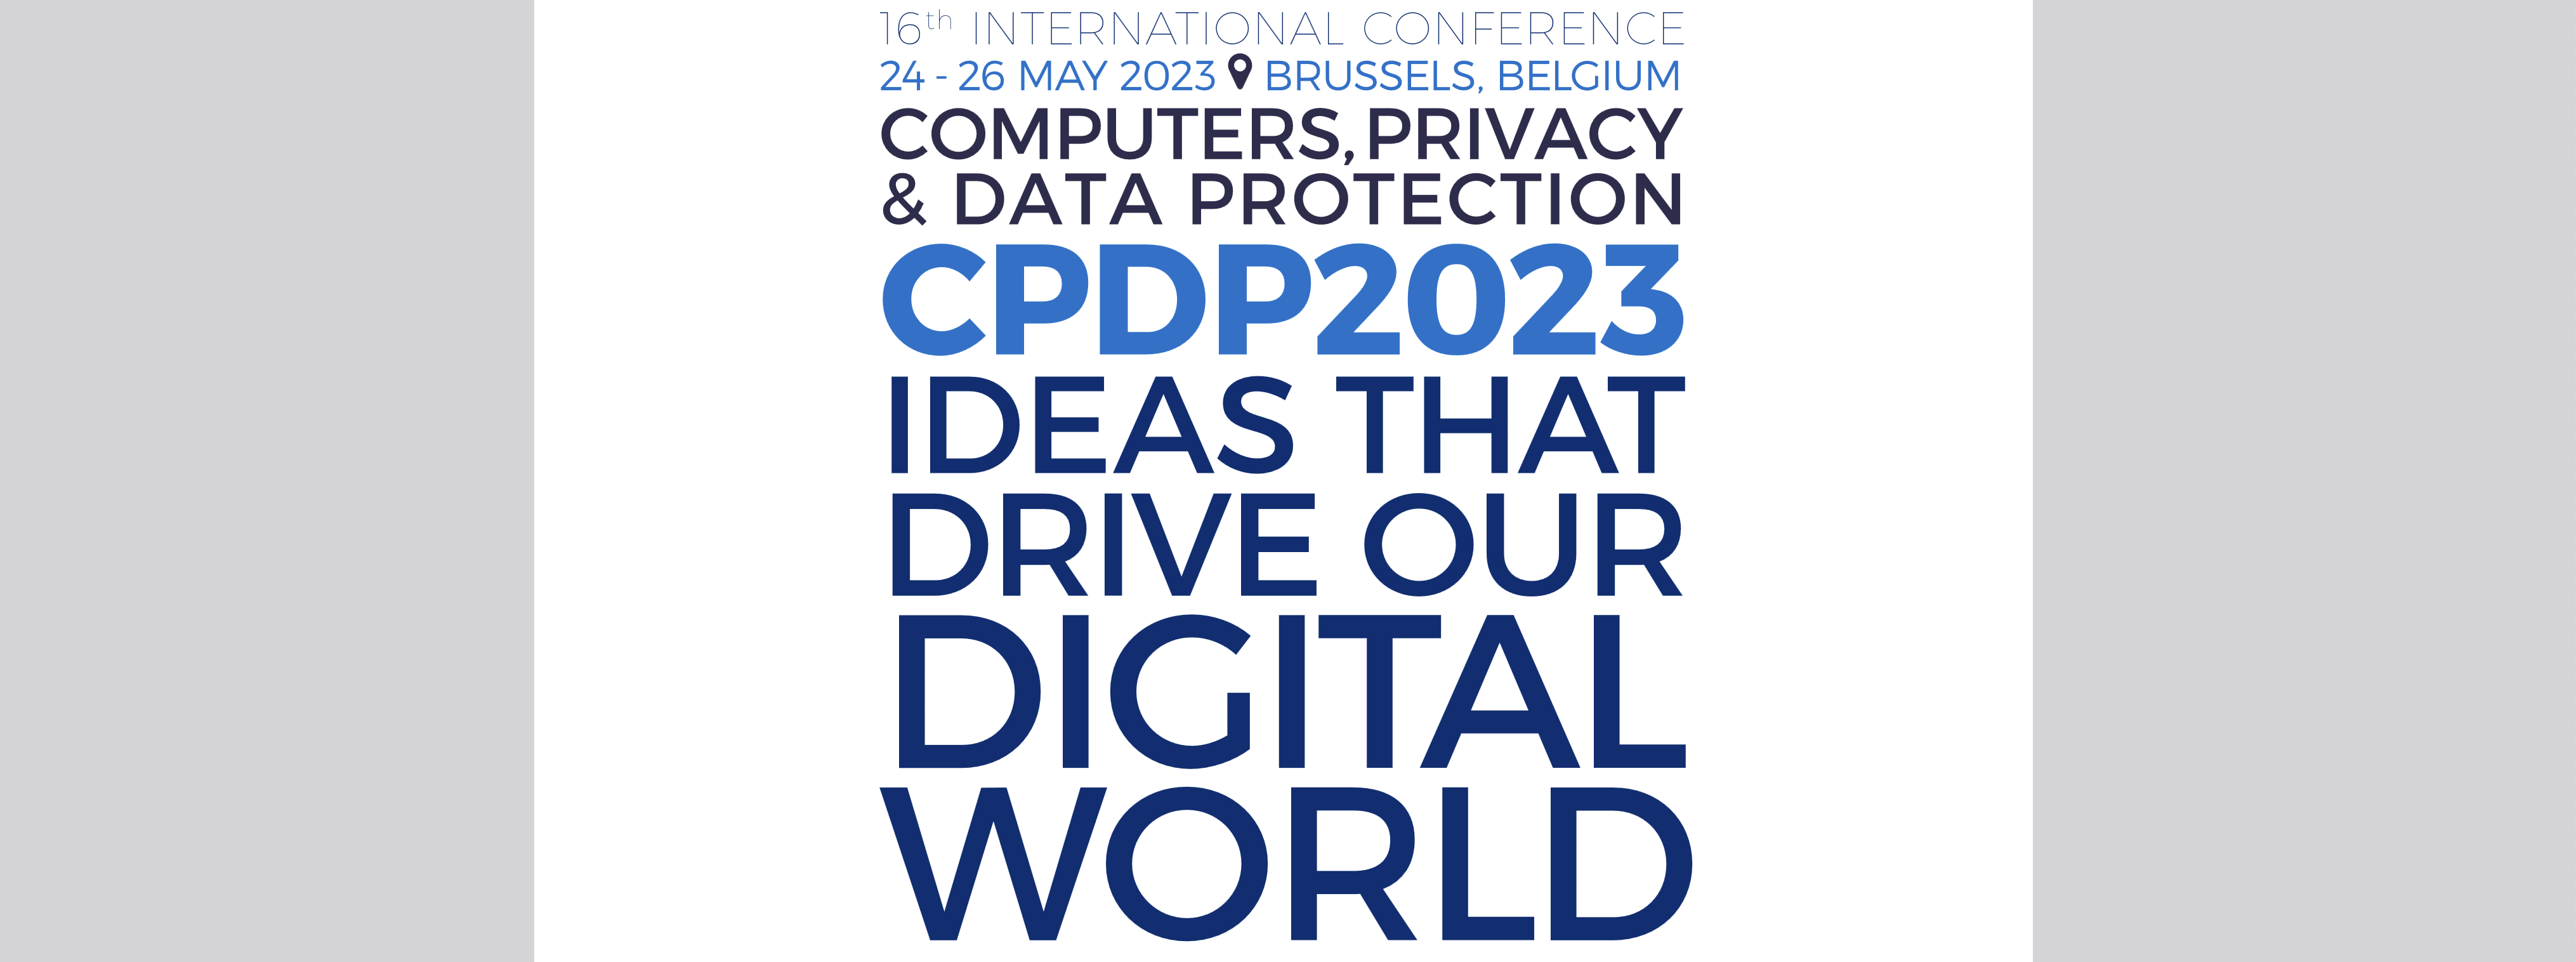 Catherine Forget participe à la prochaine CPDP 2023, la « Computer Privacy & Data Protection », les 24 et 26 mai à Bruxelles.